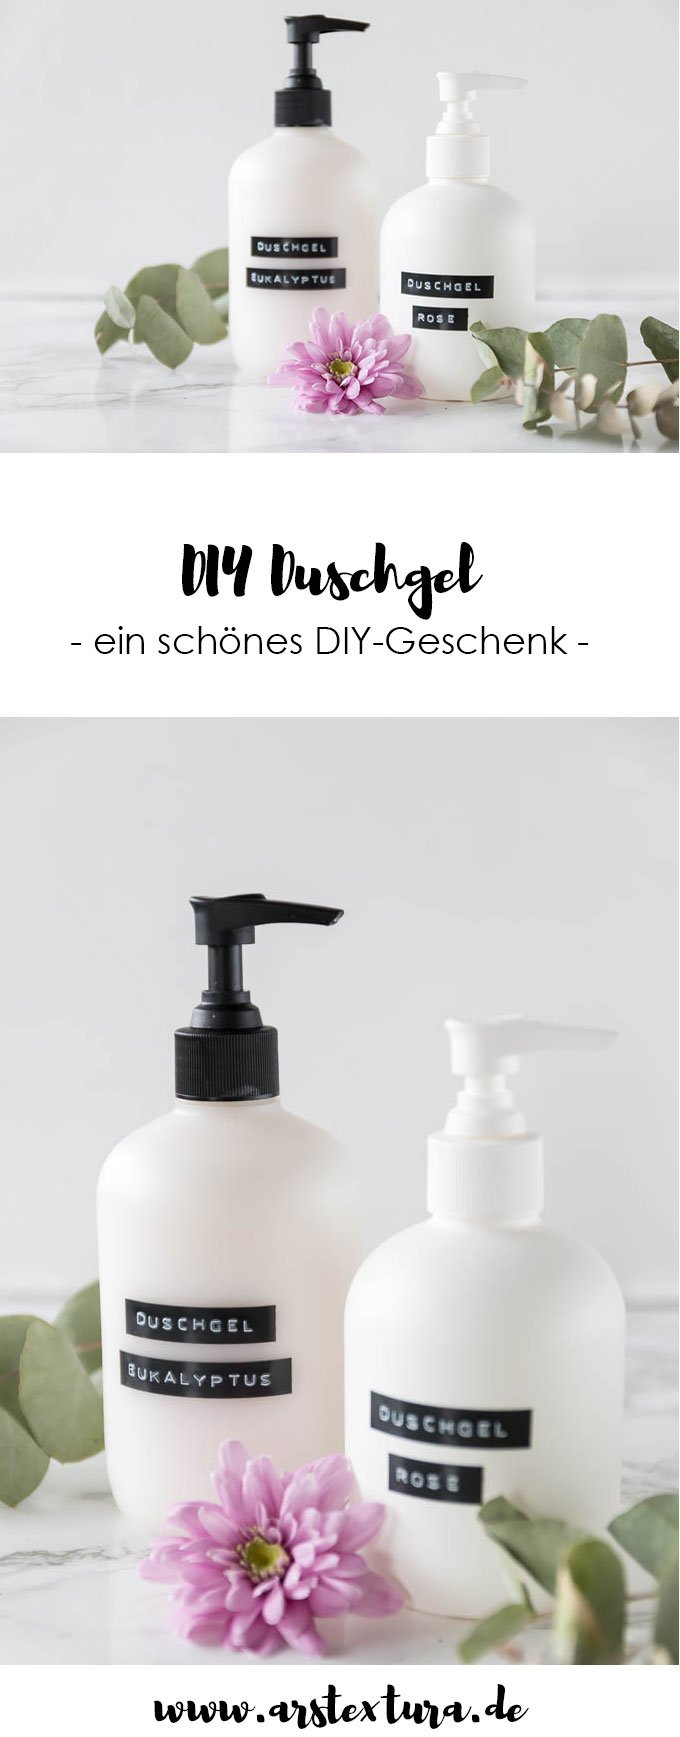 DIY Duschgel selber machen | ein schönes DIY Geschenk zu Weihnachten | #diygeschenk #diy #duschgel 